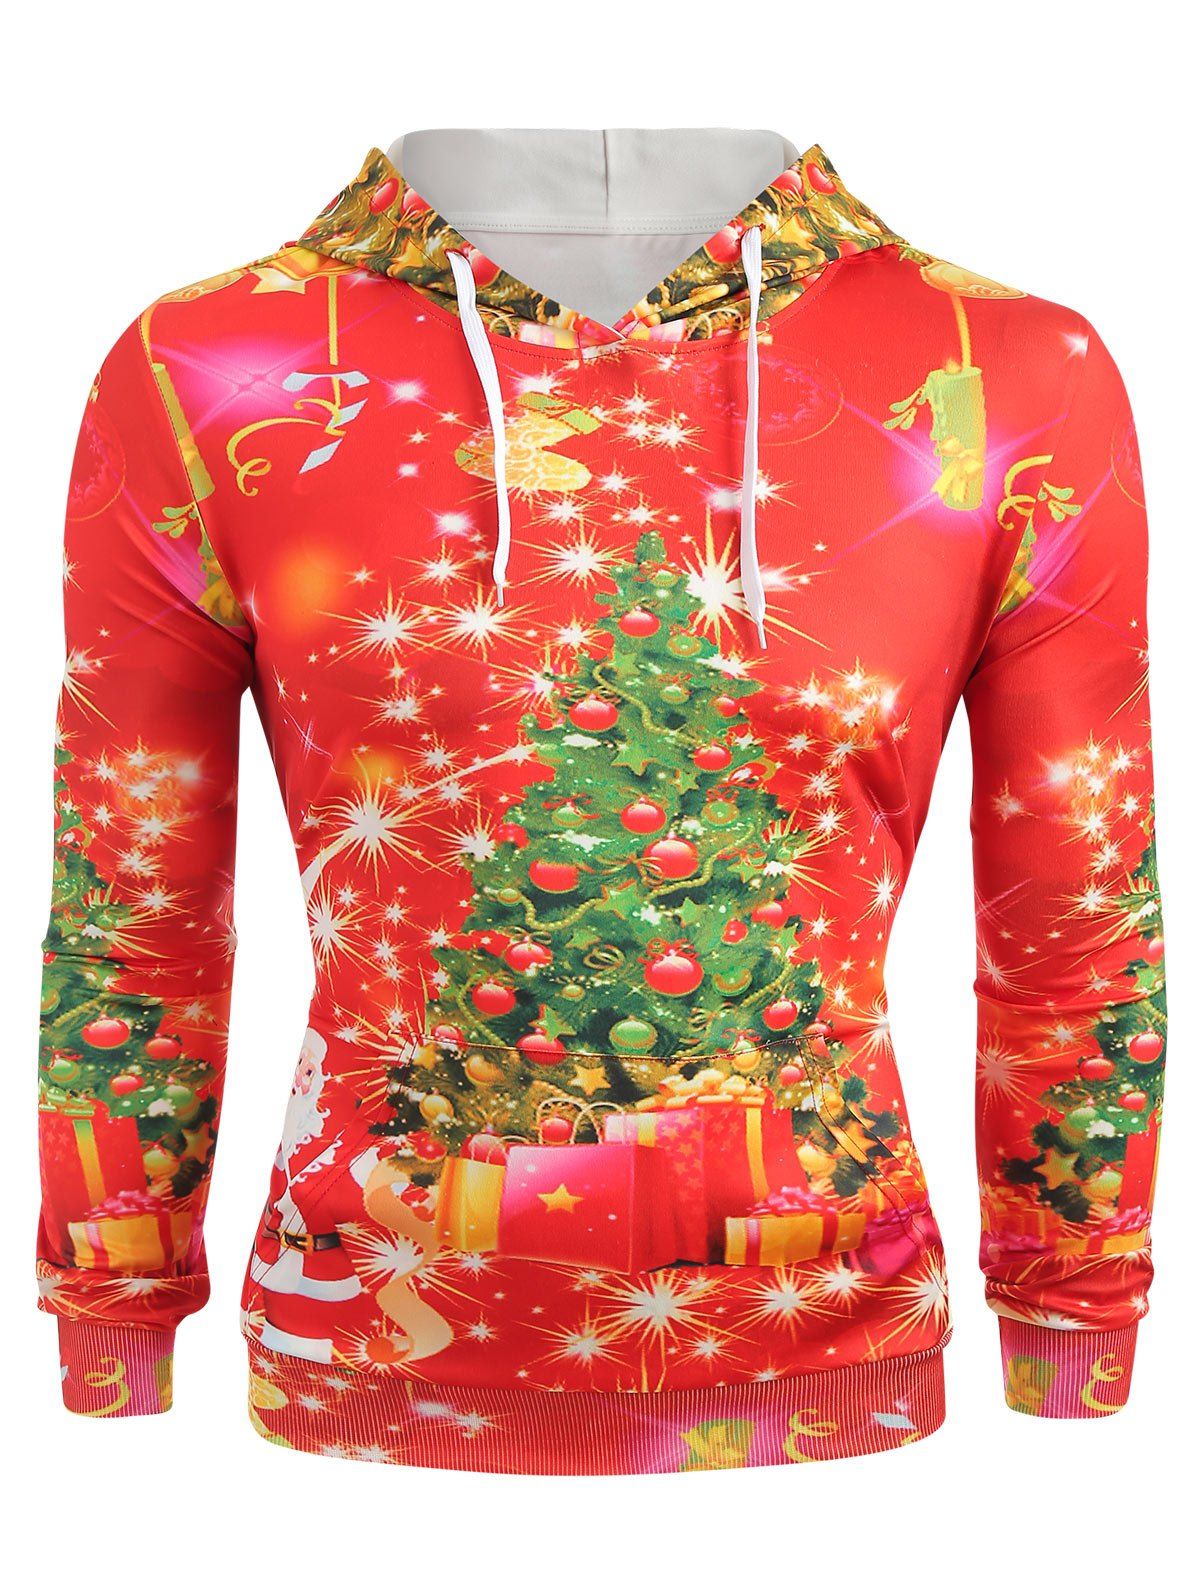 Sweat-Shirt à Capuche Manches Longues avec Imprimé Sapin de Noël - Rouge M